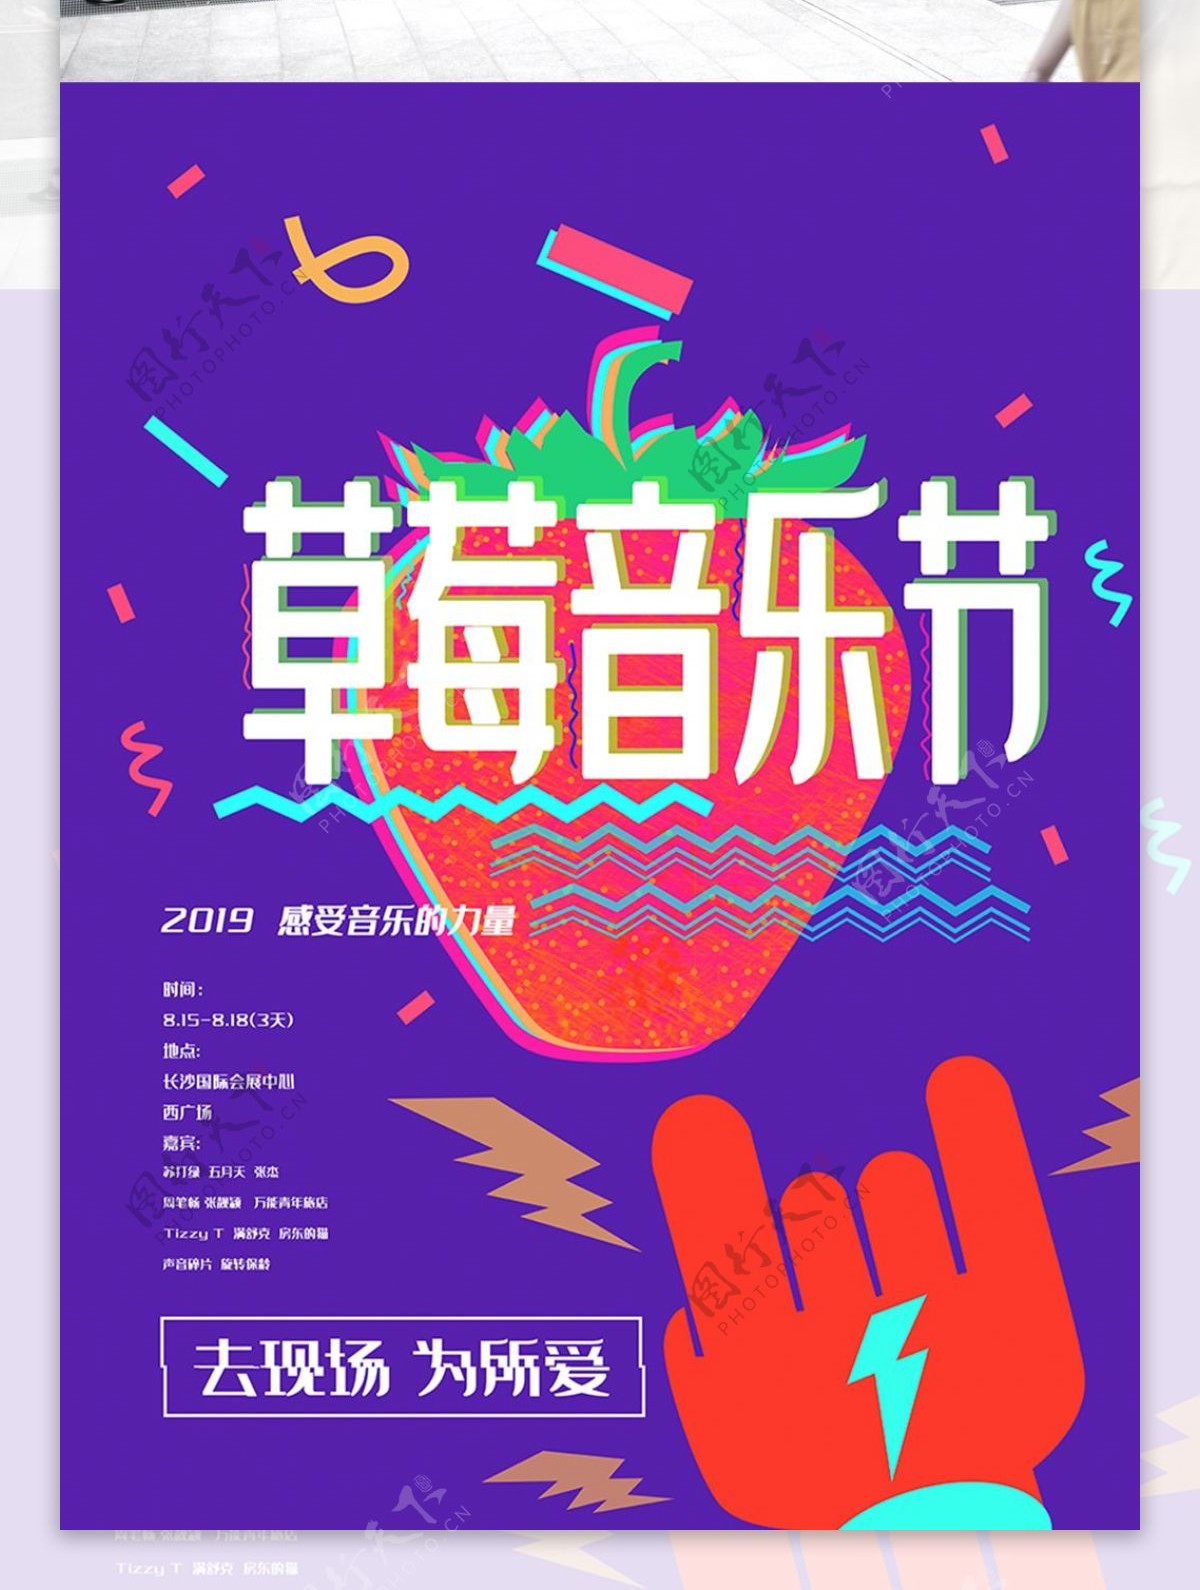 草莓音乐节节日海报